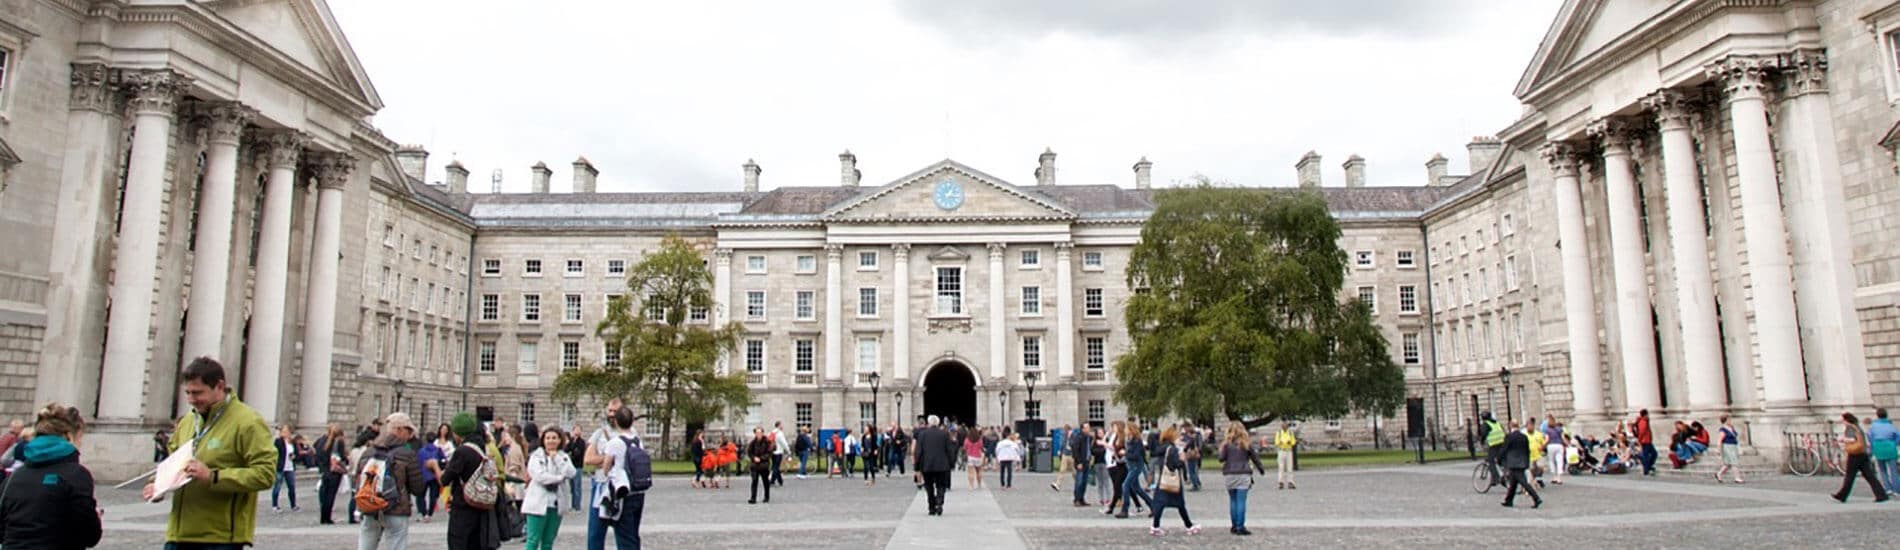 Séjour linguistique Dublin – Trinity College STEM (Sciences, Technologies, Ingénierie, Mathématiques)